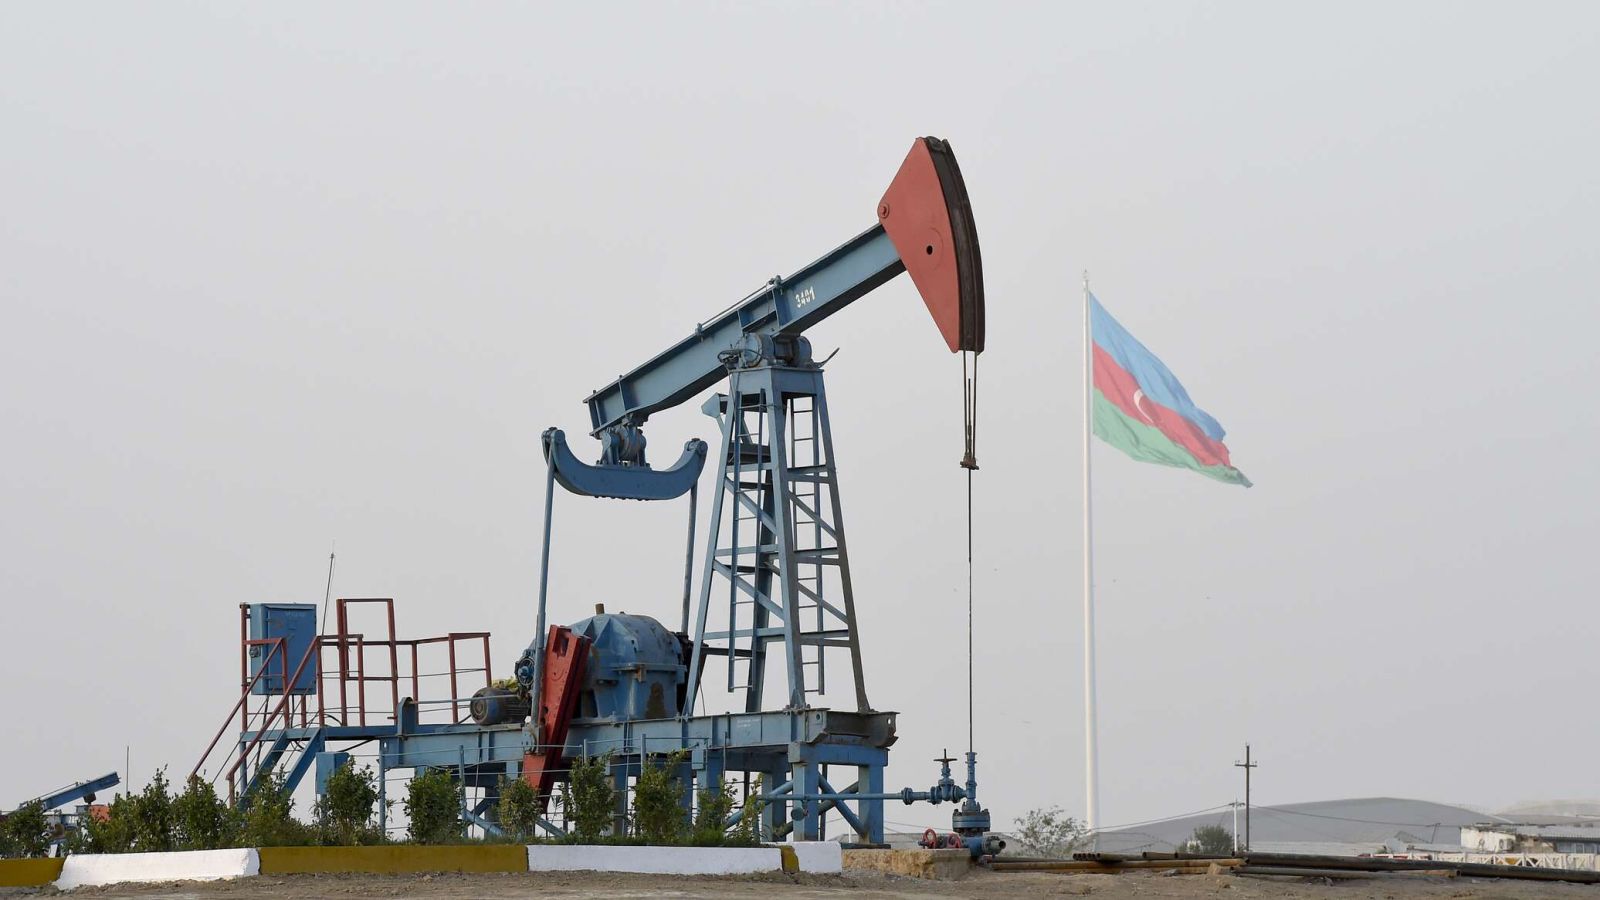 Azərbaycan neftinin qiyməti ucuzlaşıb